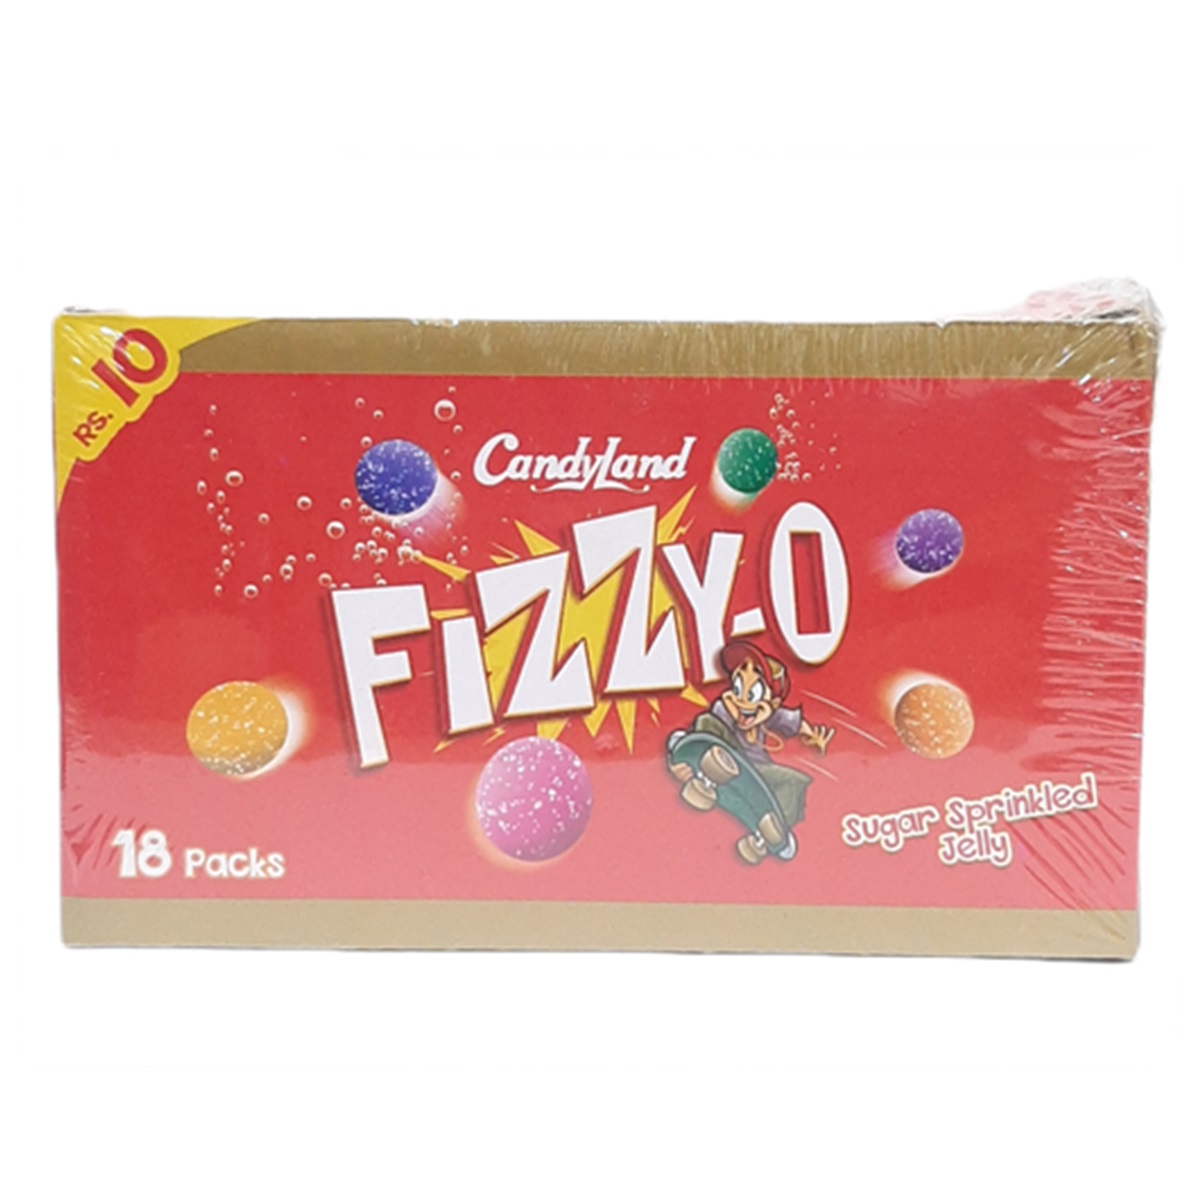 Candyland FIZZY O Jelly Sugar Sprinkled Jelly (18 PCS BOX)